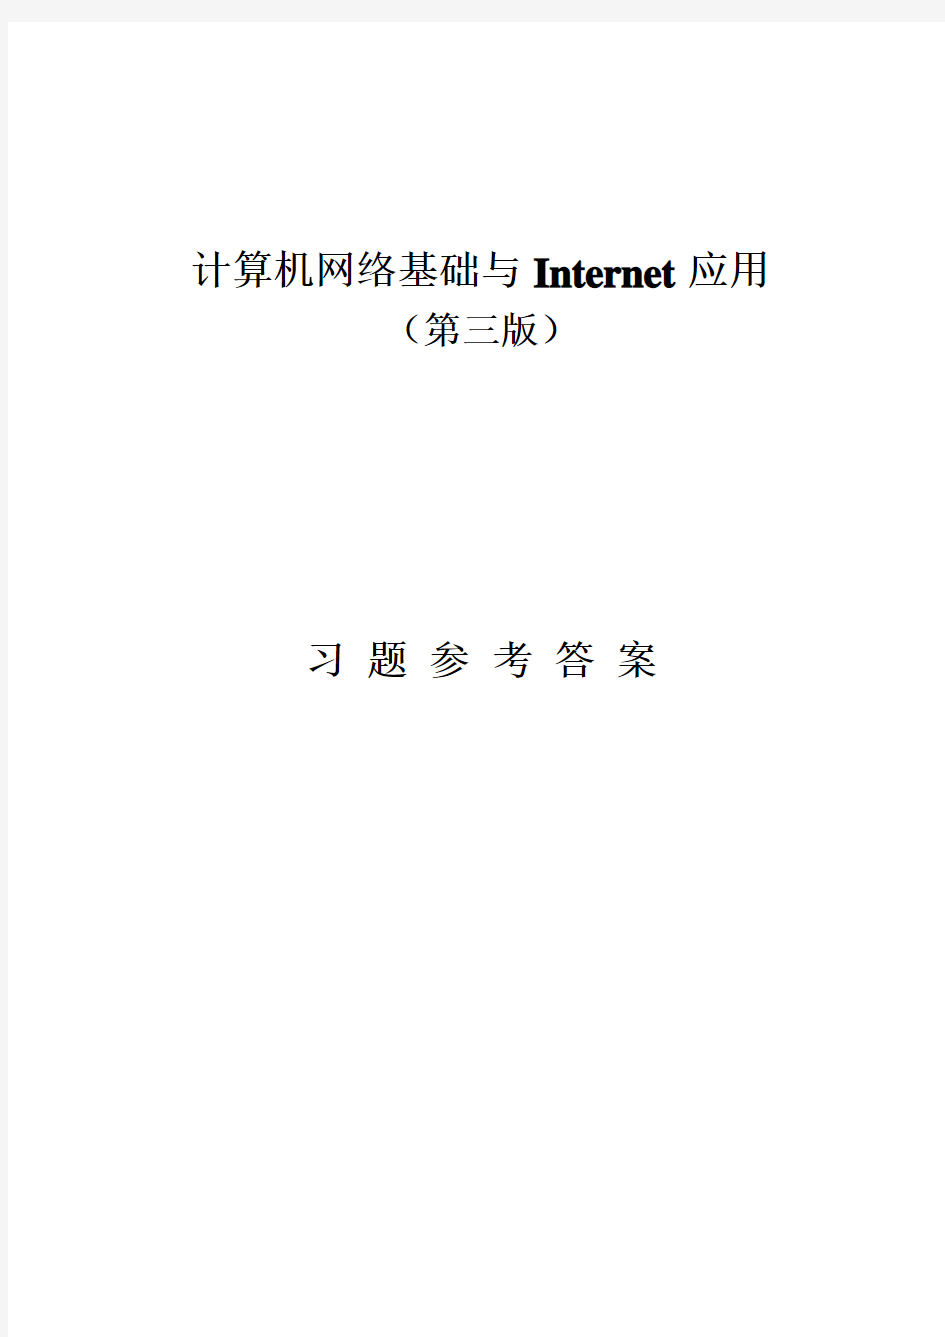 《计算机网络基础与Internet应用(第三版)》-刘兵-习题参考答案